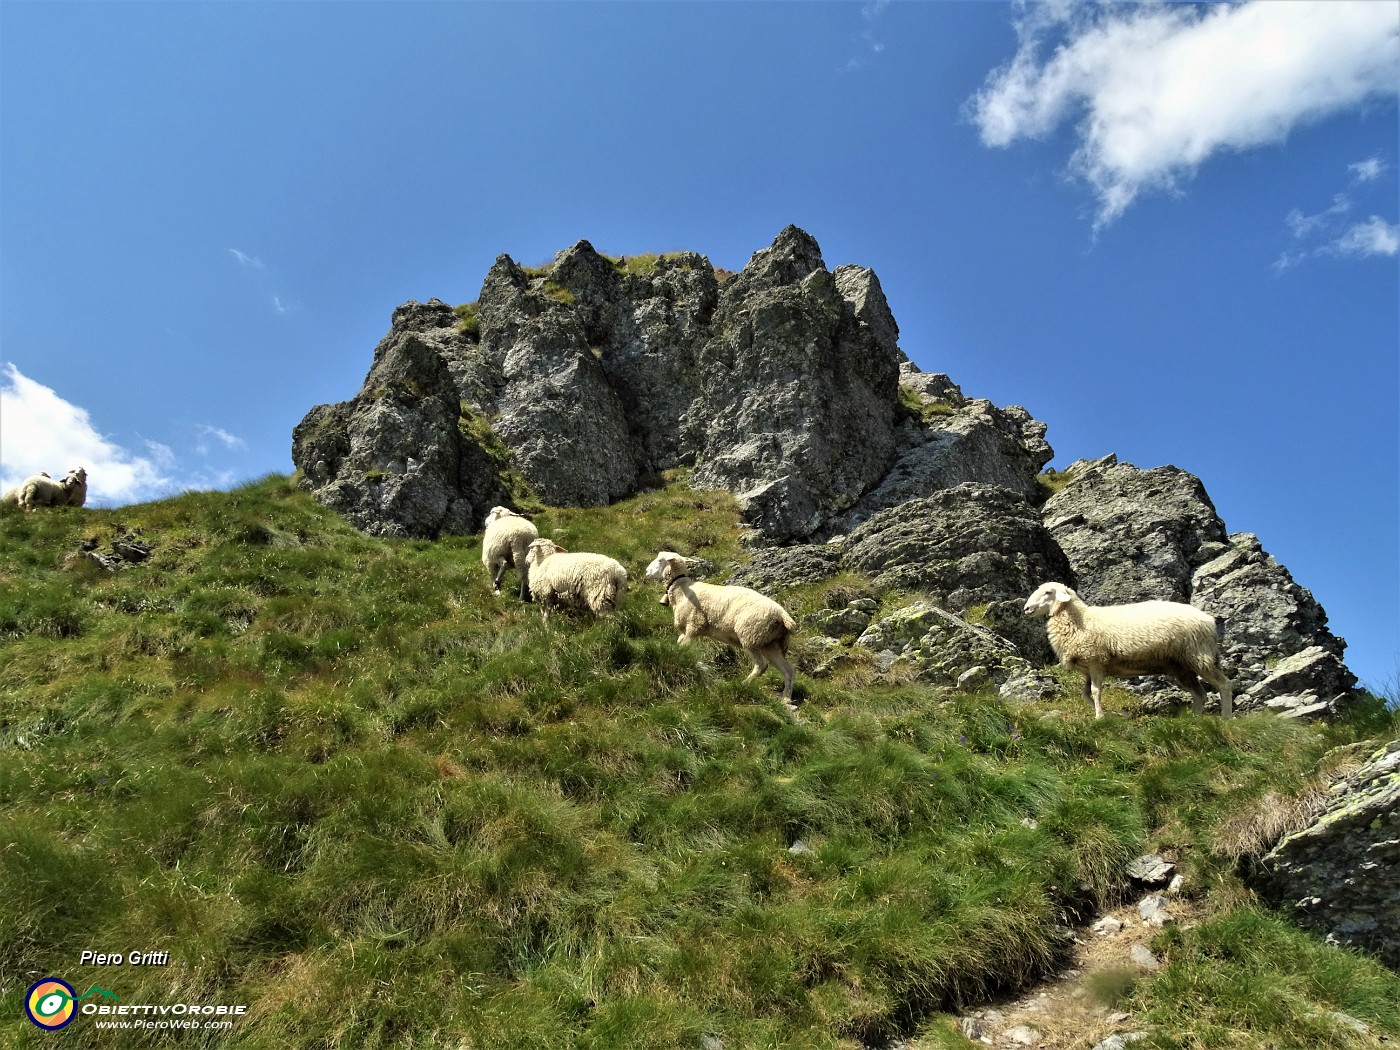 66 La cima del Ponteranica centr. con pecore al pascolo (2372 m).JPG